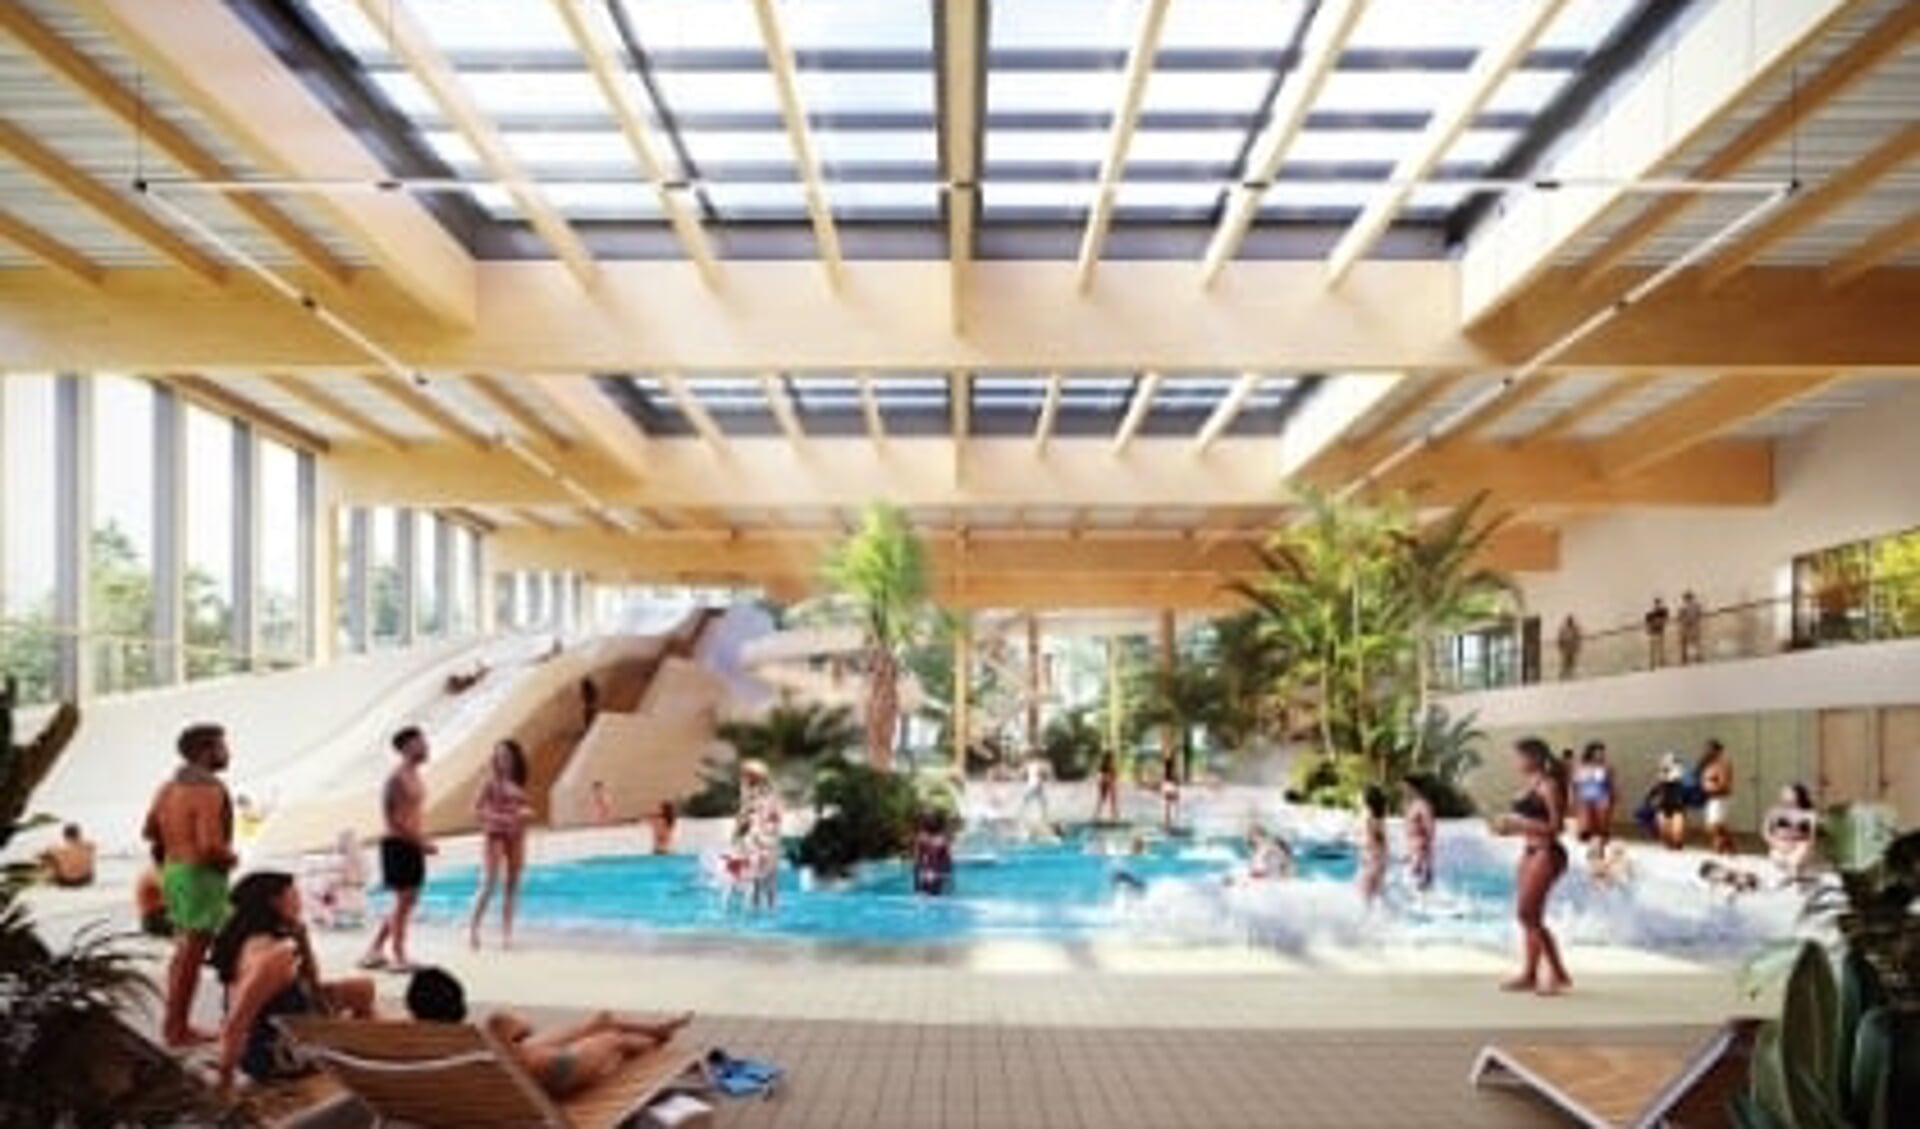 Impressie van recreatiebad in nieuw zwembad De Welle in Drachten.